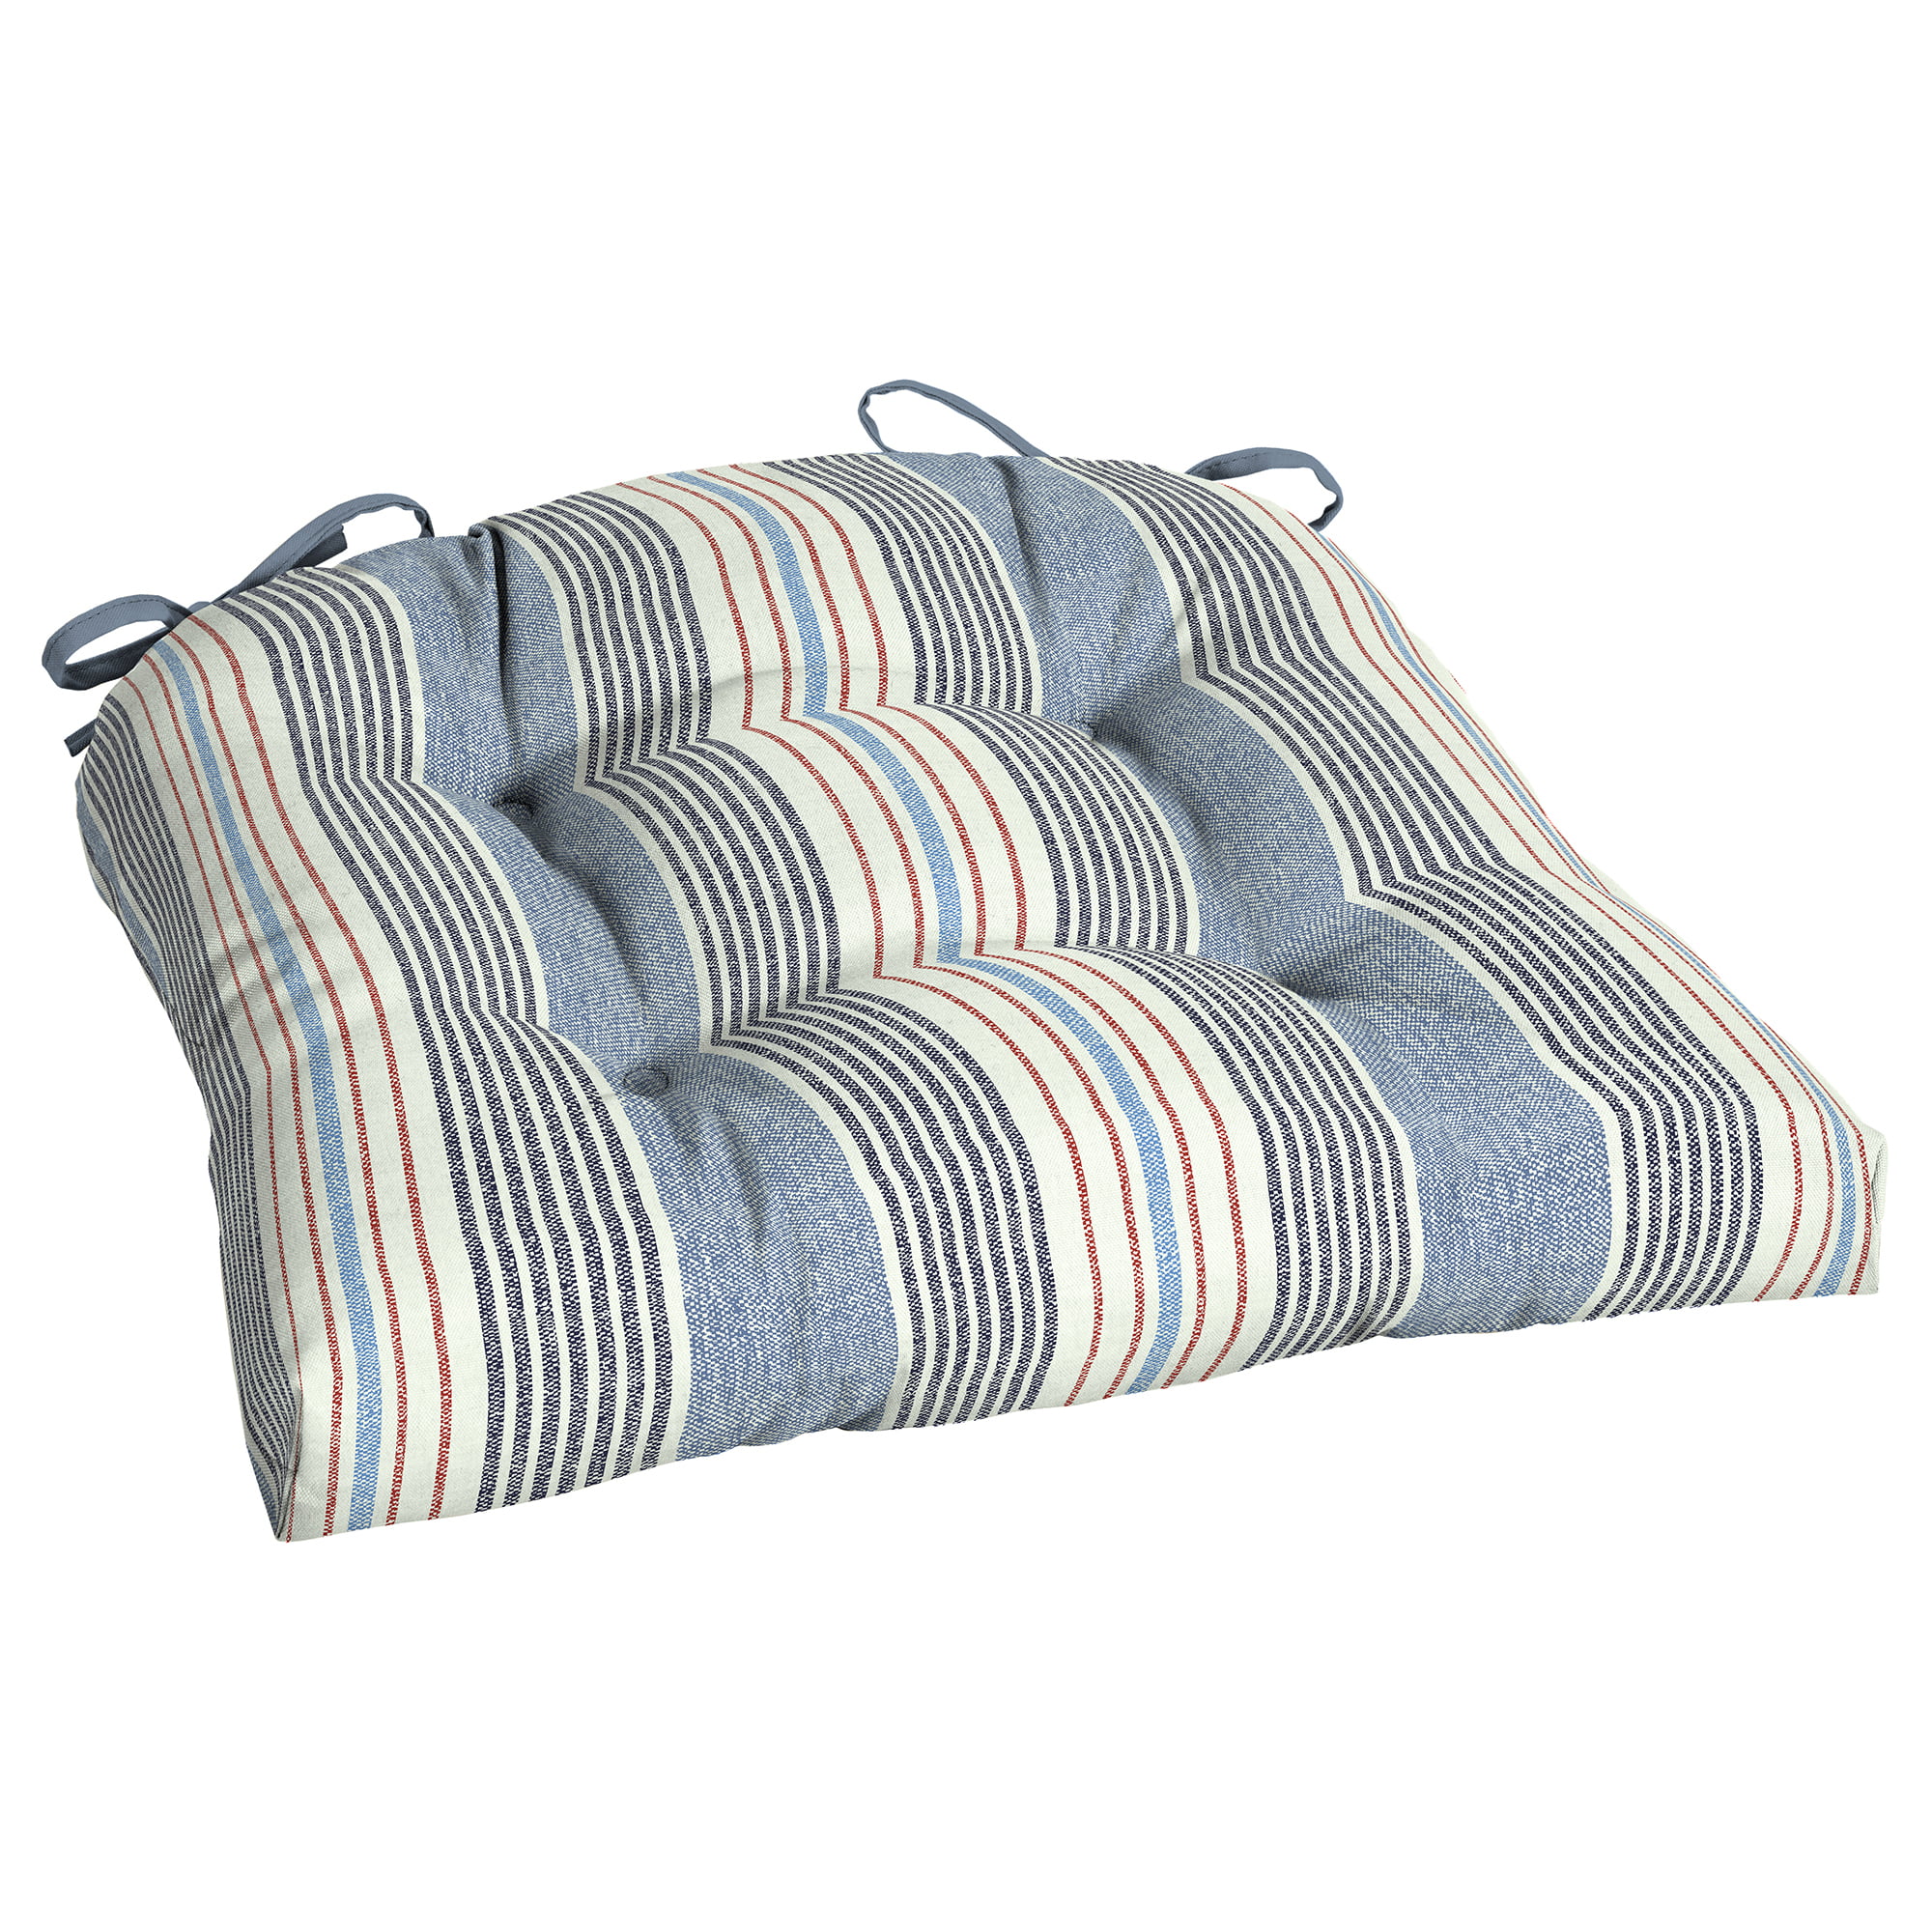 Venta 18 X 20 Outdoor Chair Cushions, 20 X 18 Outdoor Cushions